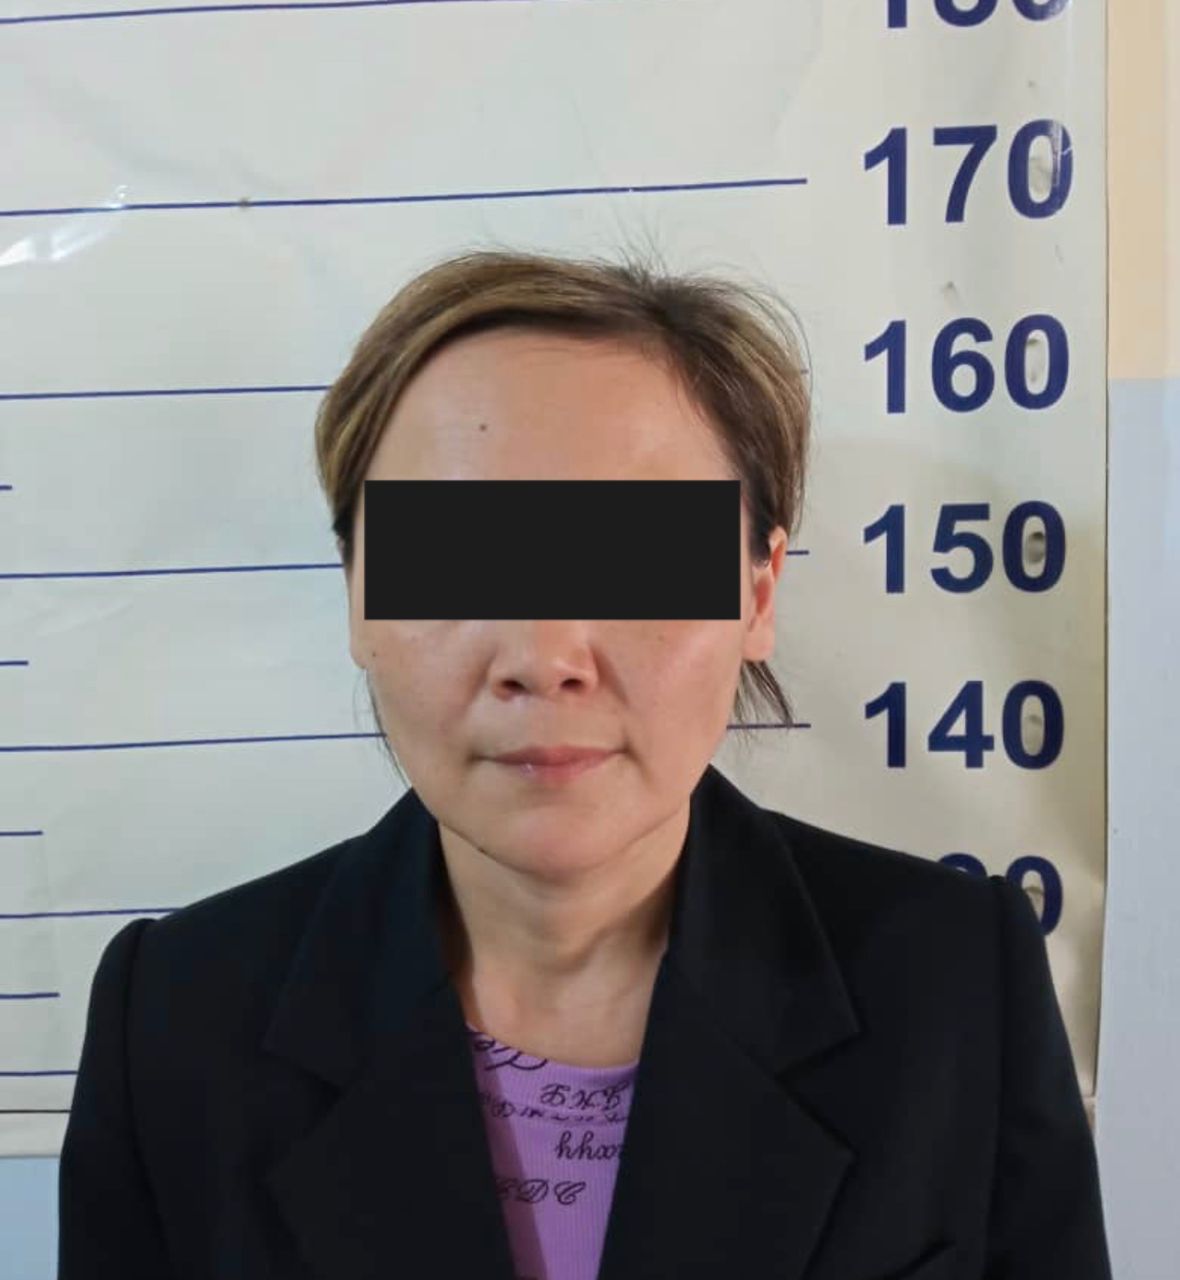 Задержана подозреваемая в мошенничестве. Мошенничество в Бишкеке. Задержали женщину, подозреваемую в крупном мошенничестве. В РК задержана женщина за мошенничество. В Бишкеке задержана подозреваемая в мошенничестве 55..